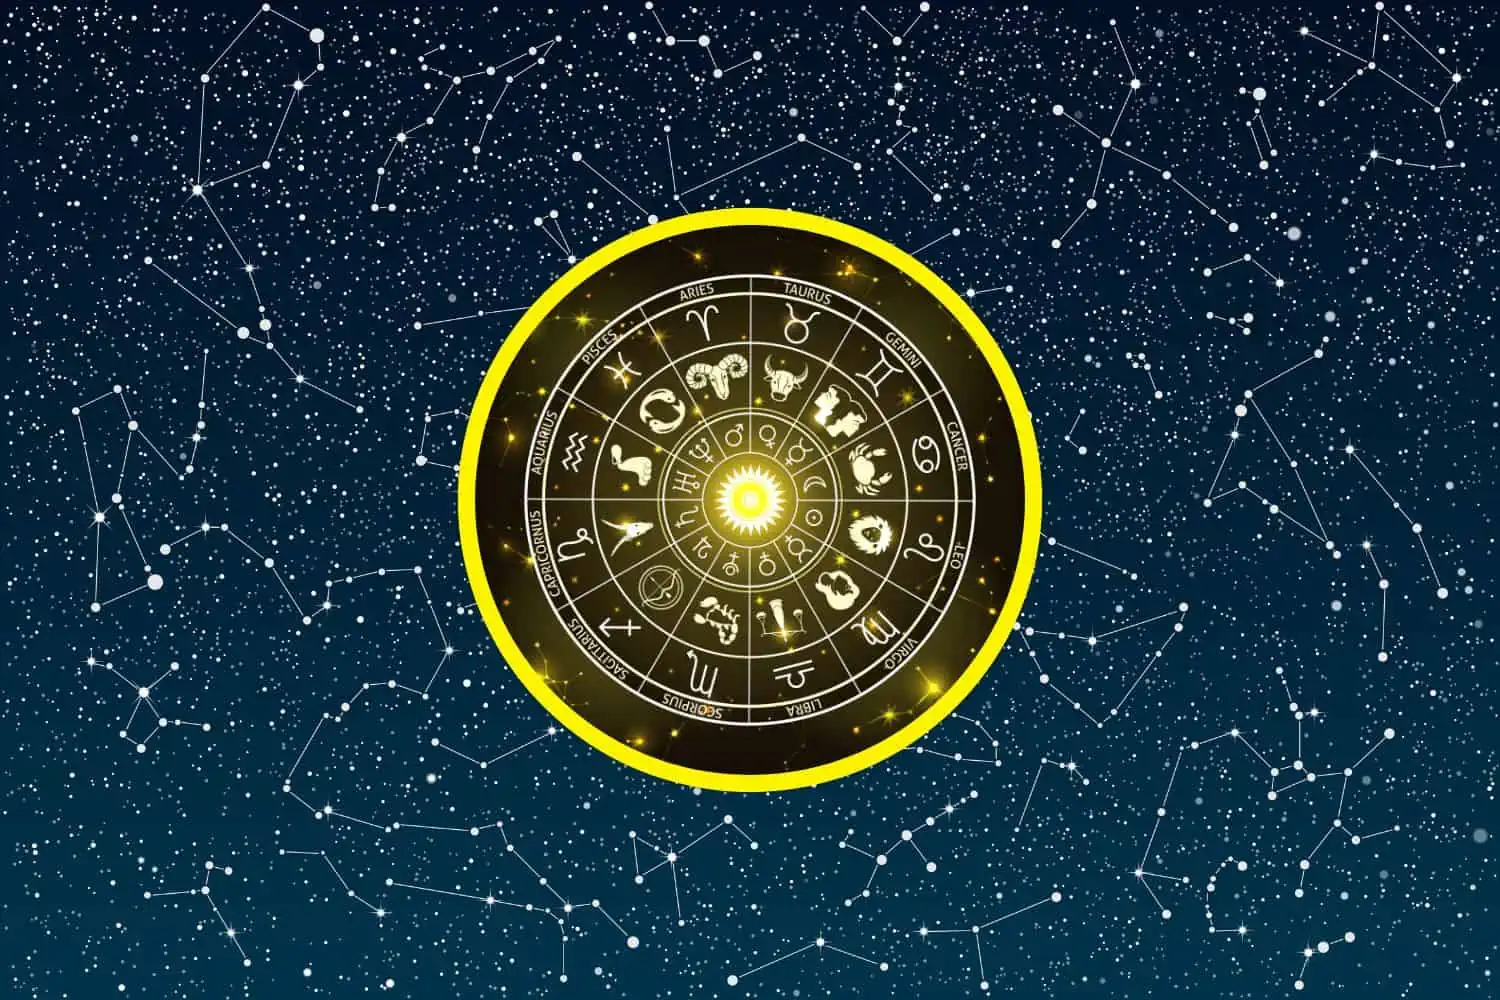 Today’s Free Horoscopes Monday 6 February 2023